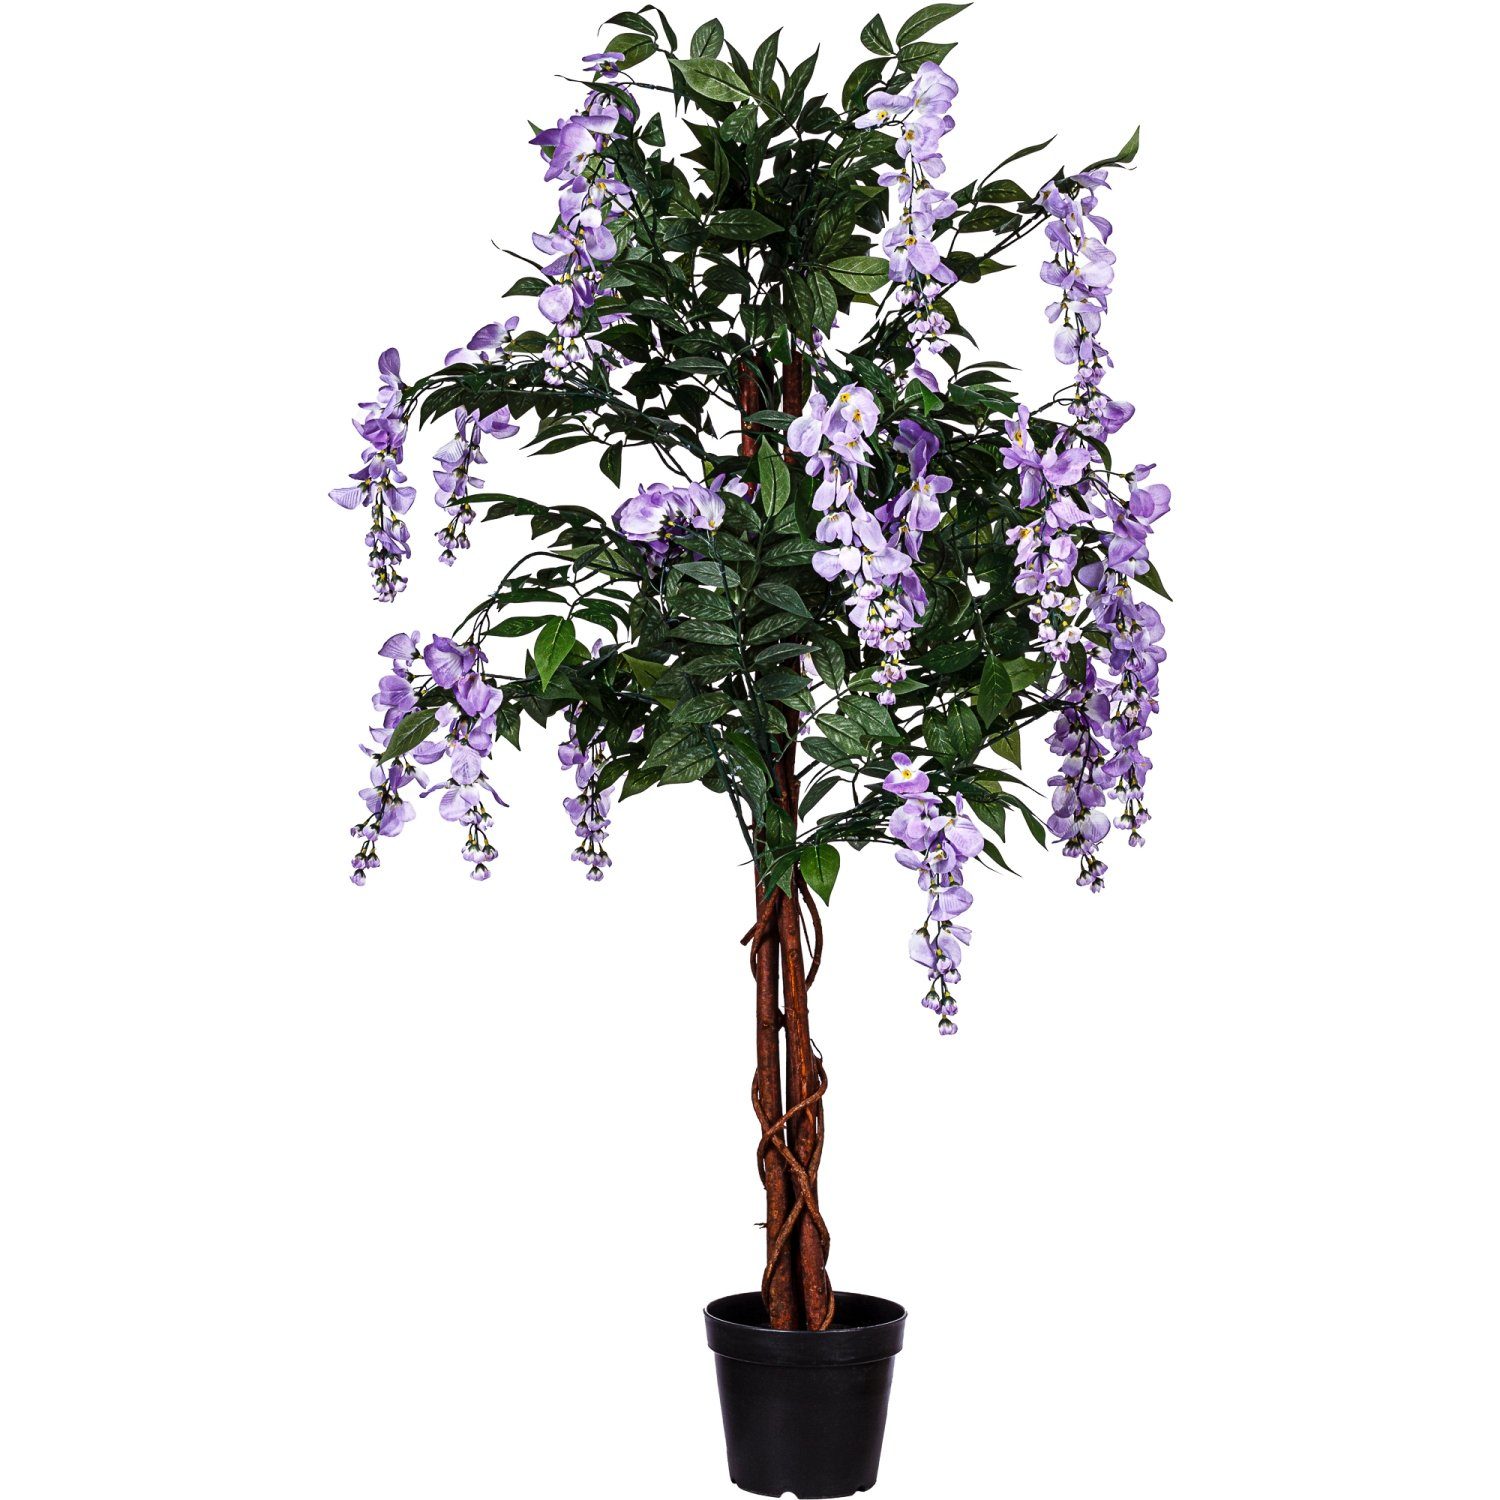 Kunstbaum Künstlicher Wisteria Baum Blauregen Kunstpflanze Wisteriabaum, PLANTASIA, Höhe 150,00 cm, 945 Blätter, Echtholzstamm, Violette Blüten